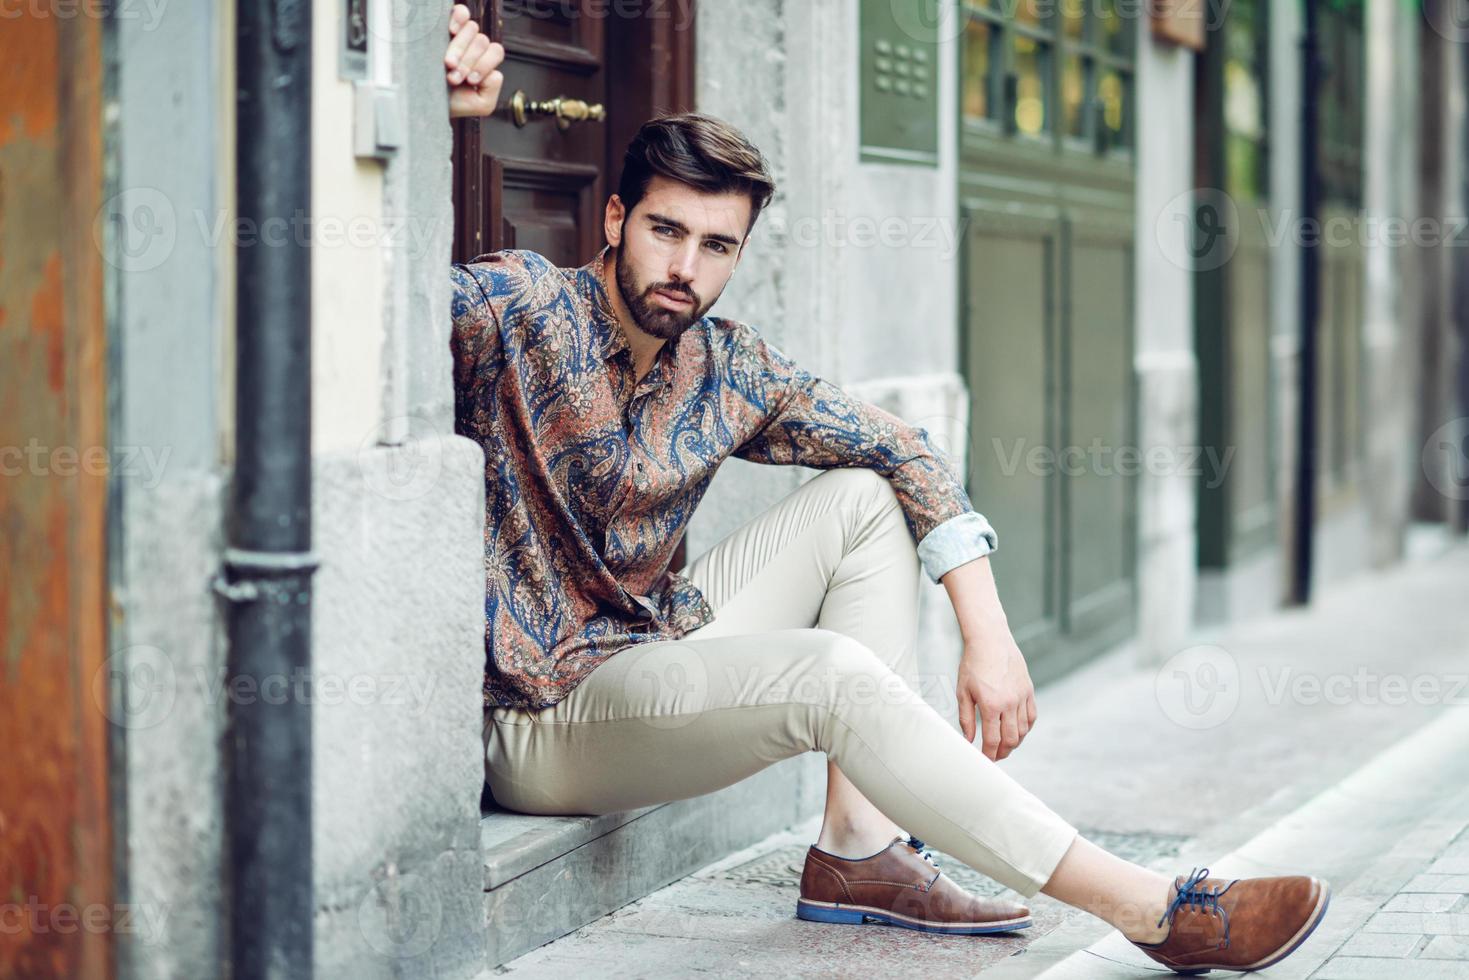 jovem barbudo, modelo de moda, sentado em um degrau urbano, vestindo roupas casuais. foto